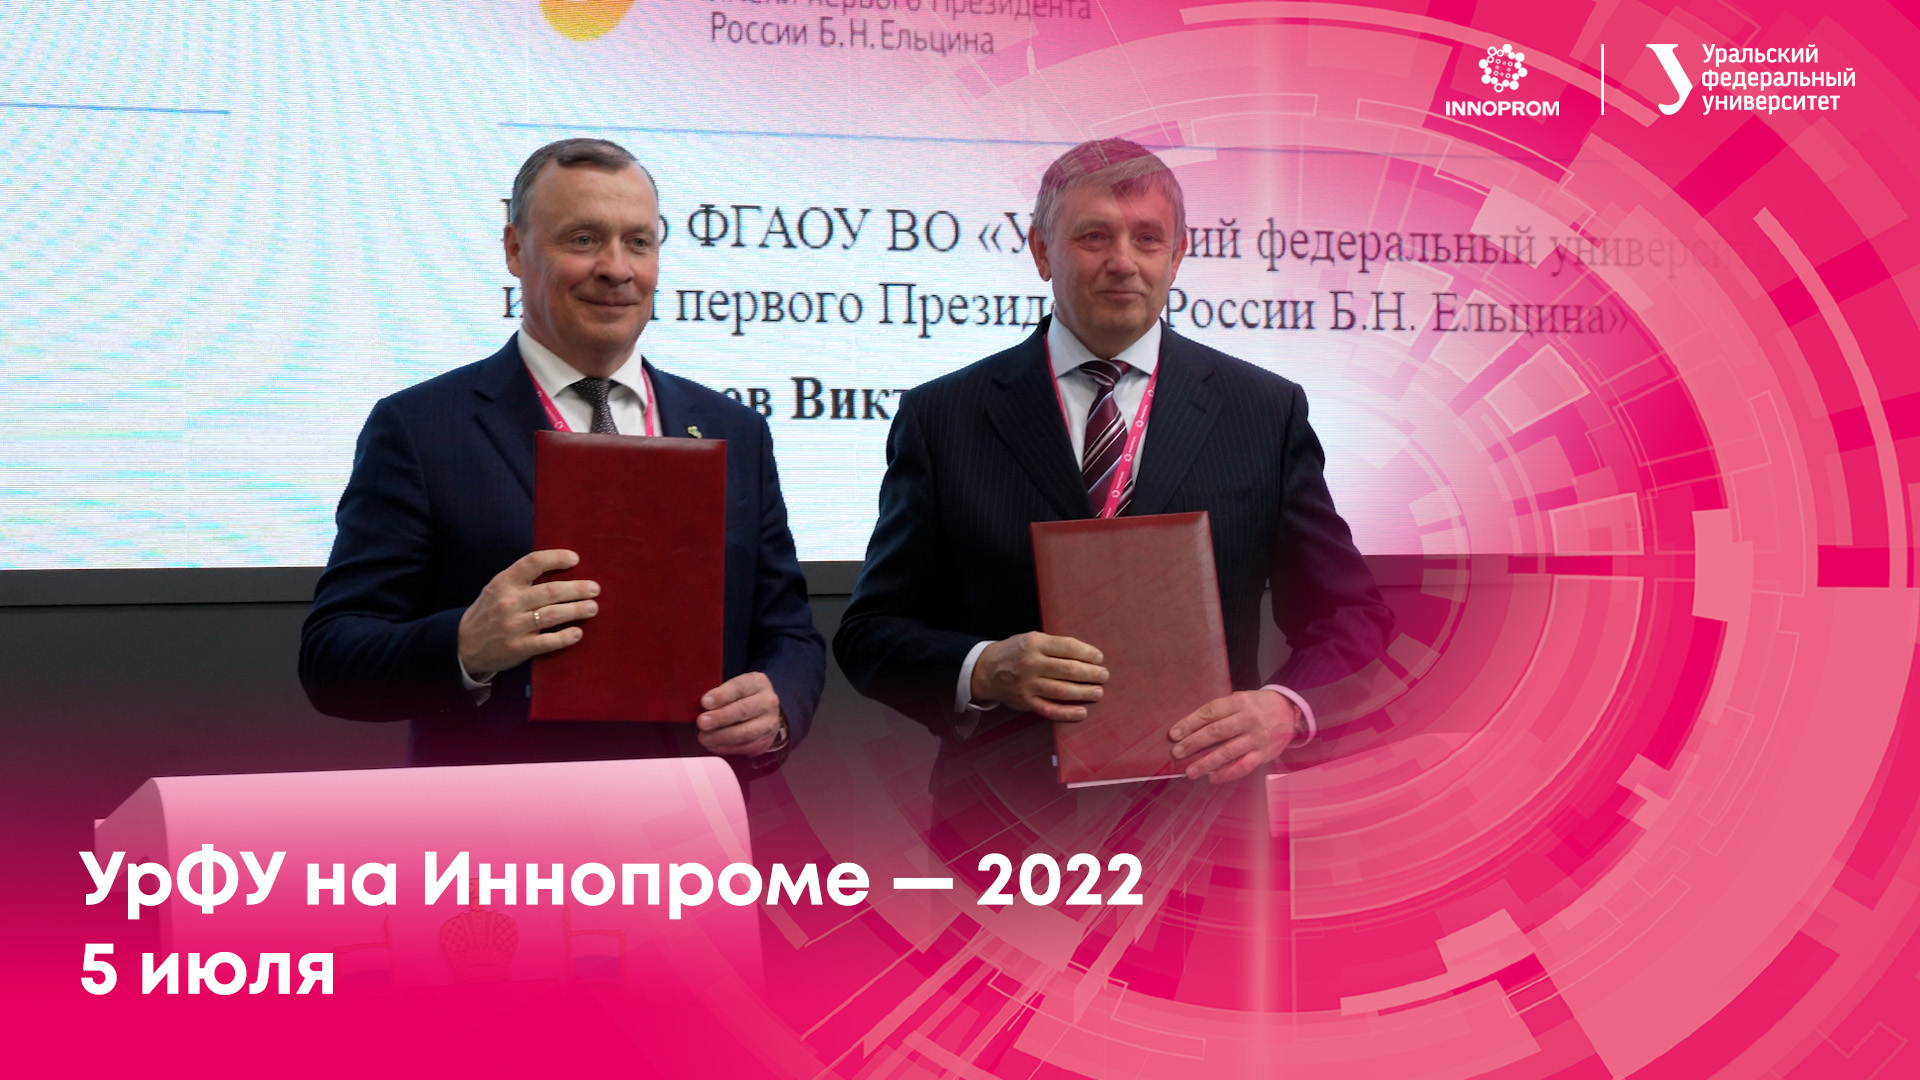 УрФУ на Иннопроме — 2022. 5 июля